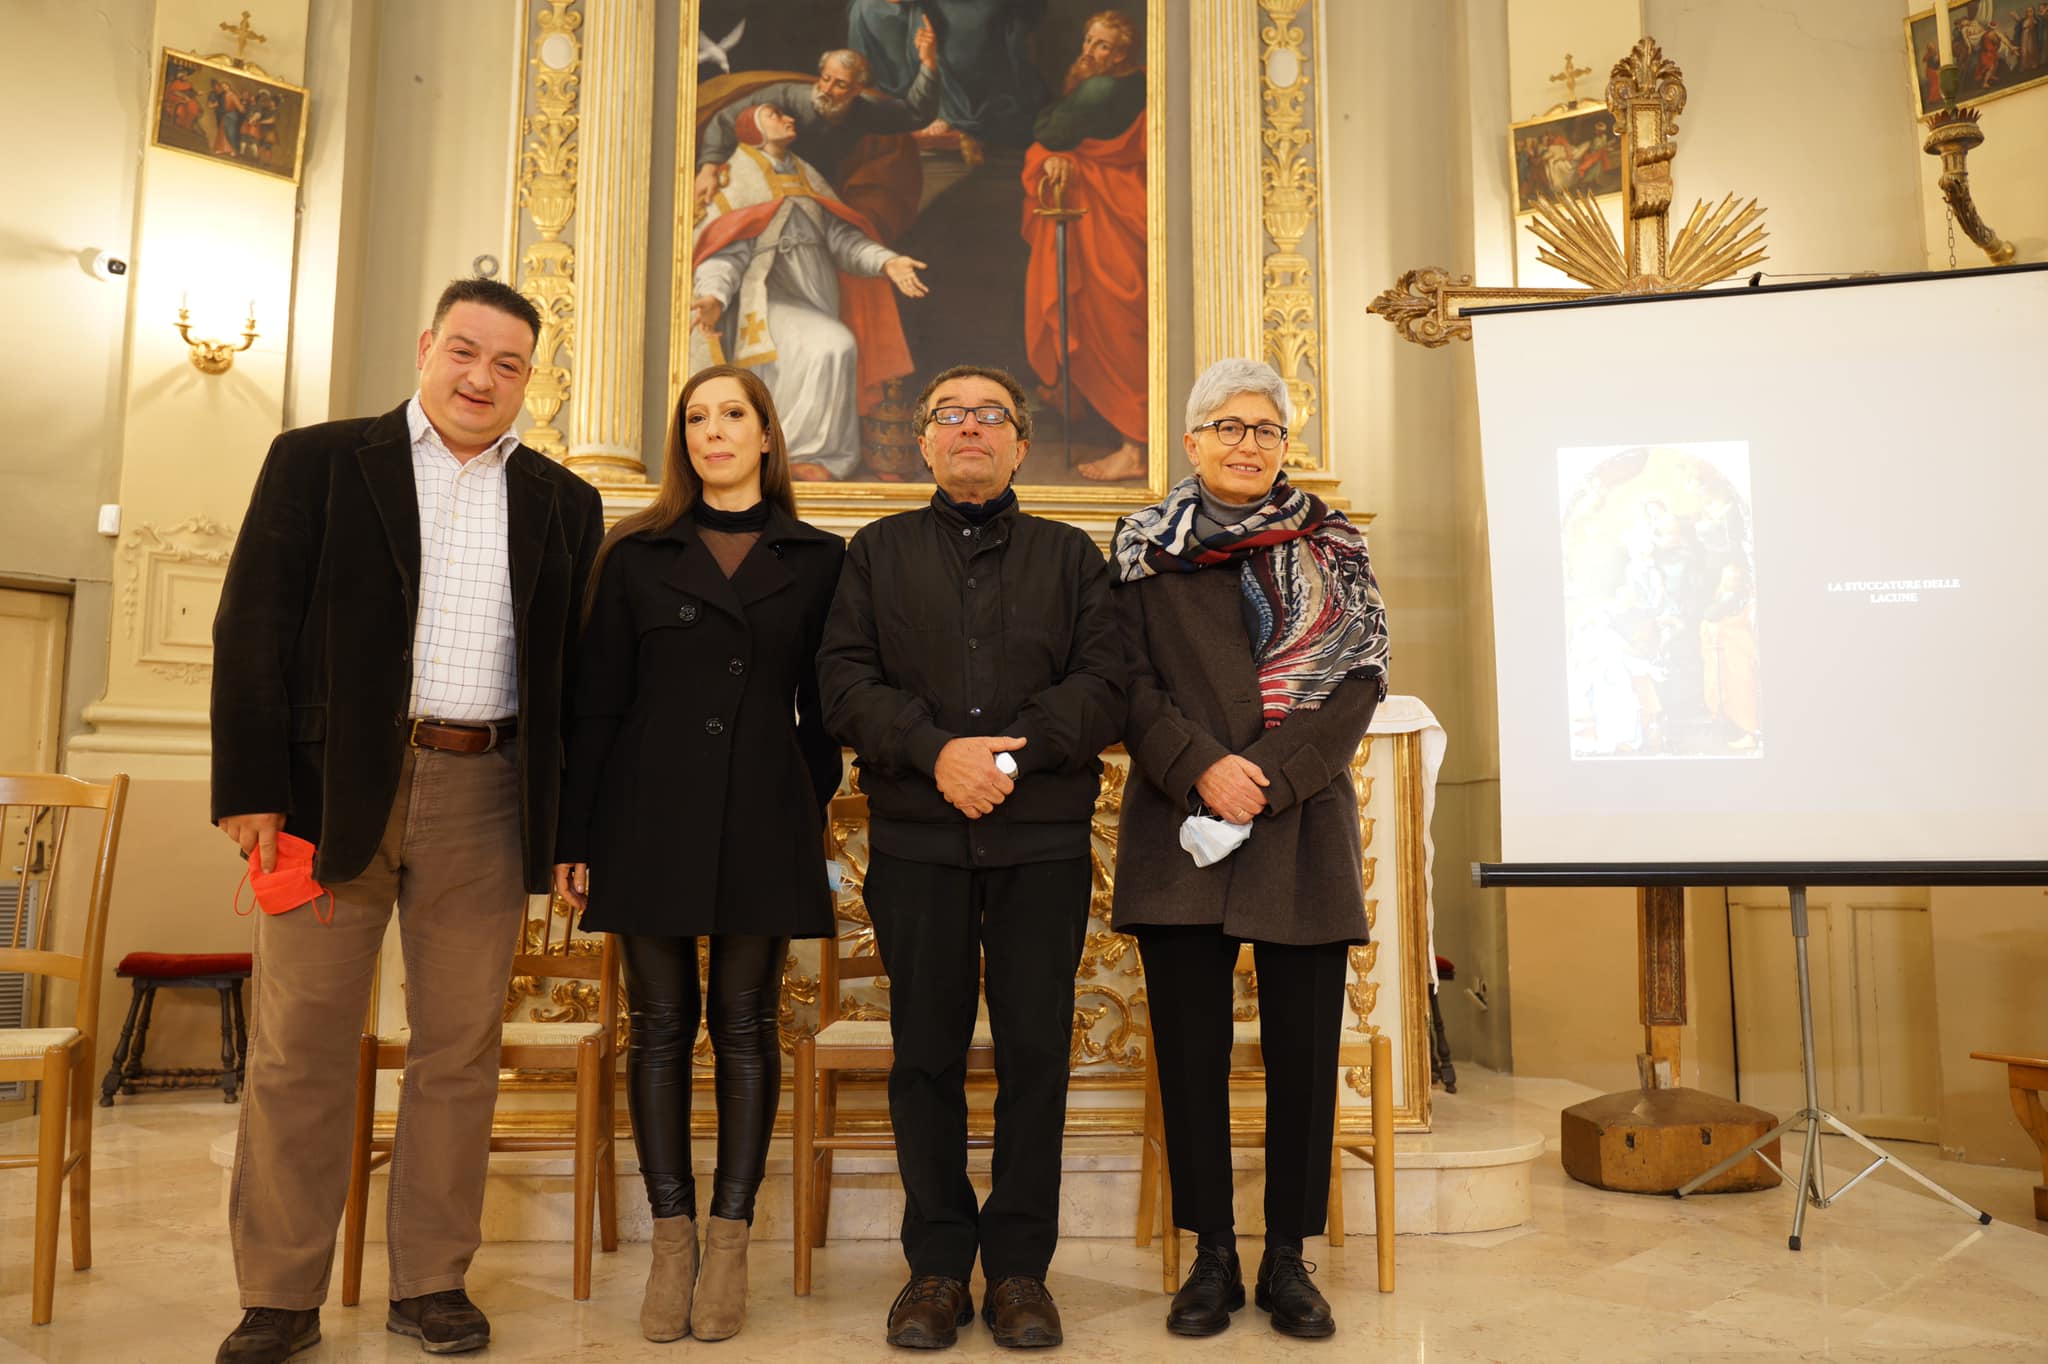 Restauro del quadro Madonna con Bambino e santi Pietro, Gregorio e Paolo | MonsanoCult Informa